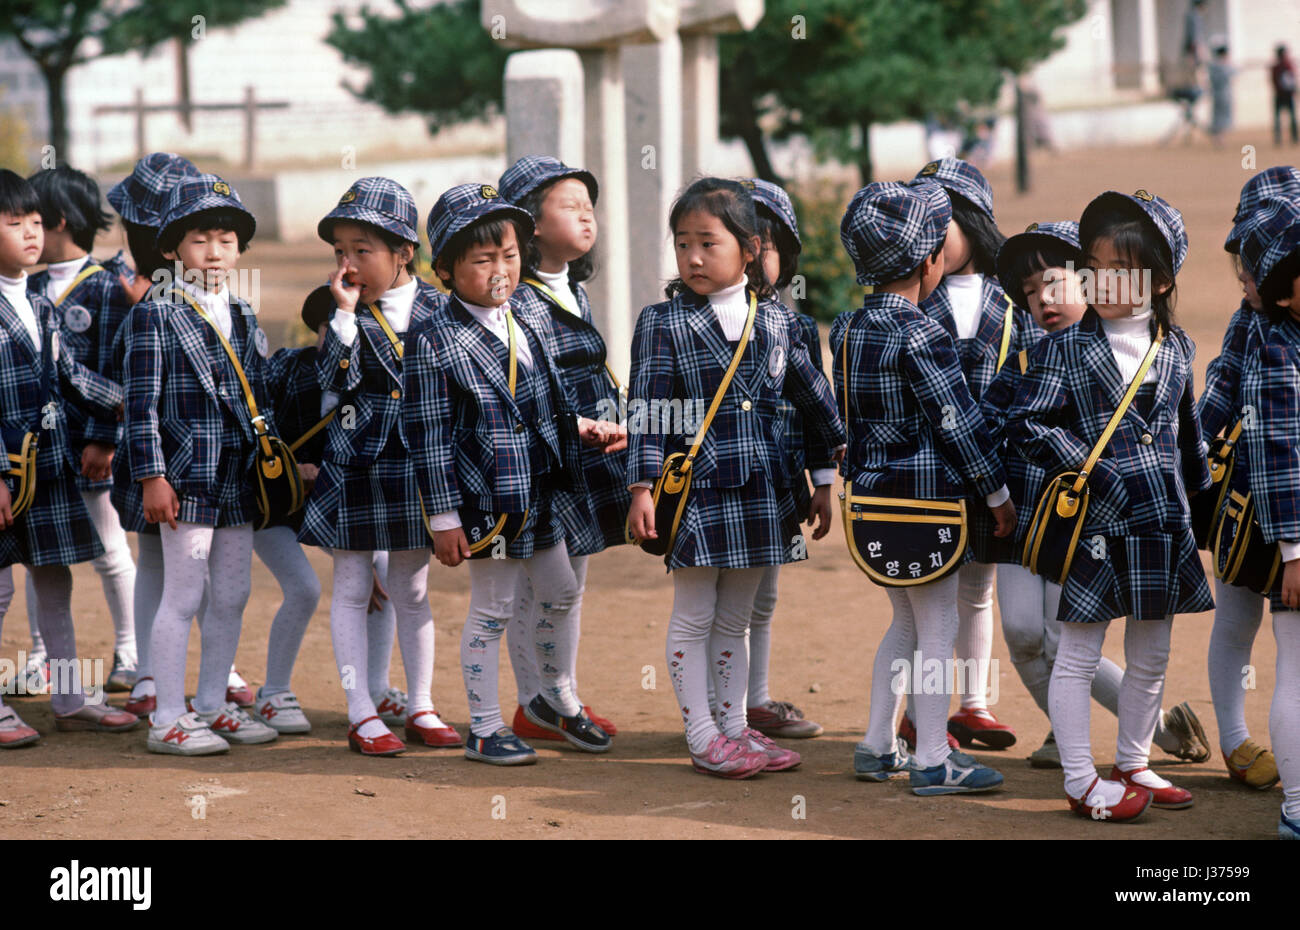 Los niños de la escuela en idénticos uniformes escolares visitando el complejo del Templo Bulguksa, Jefe de la orden Jogye Budismo Coreano, Corea del Sur, Asia Fotografía de stock -